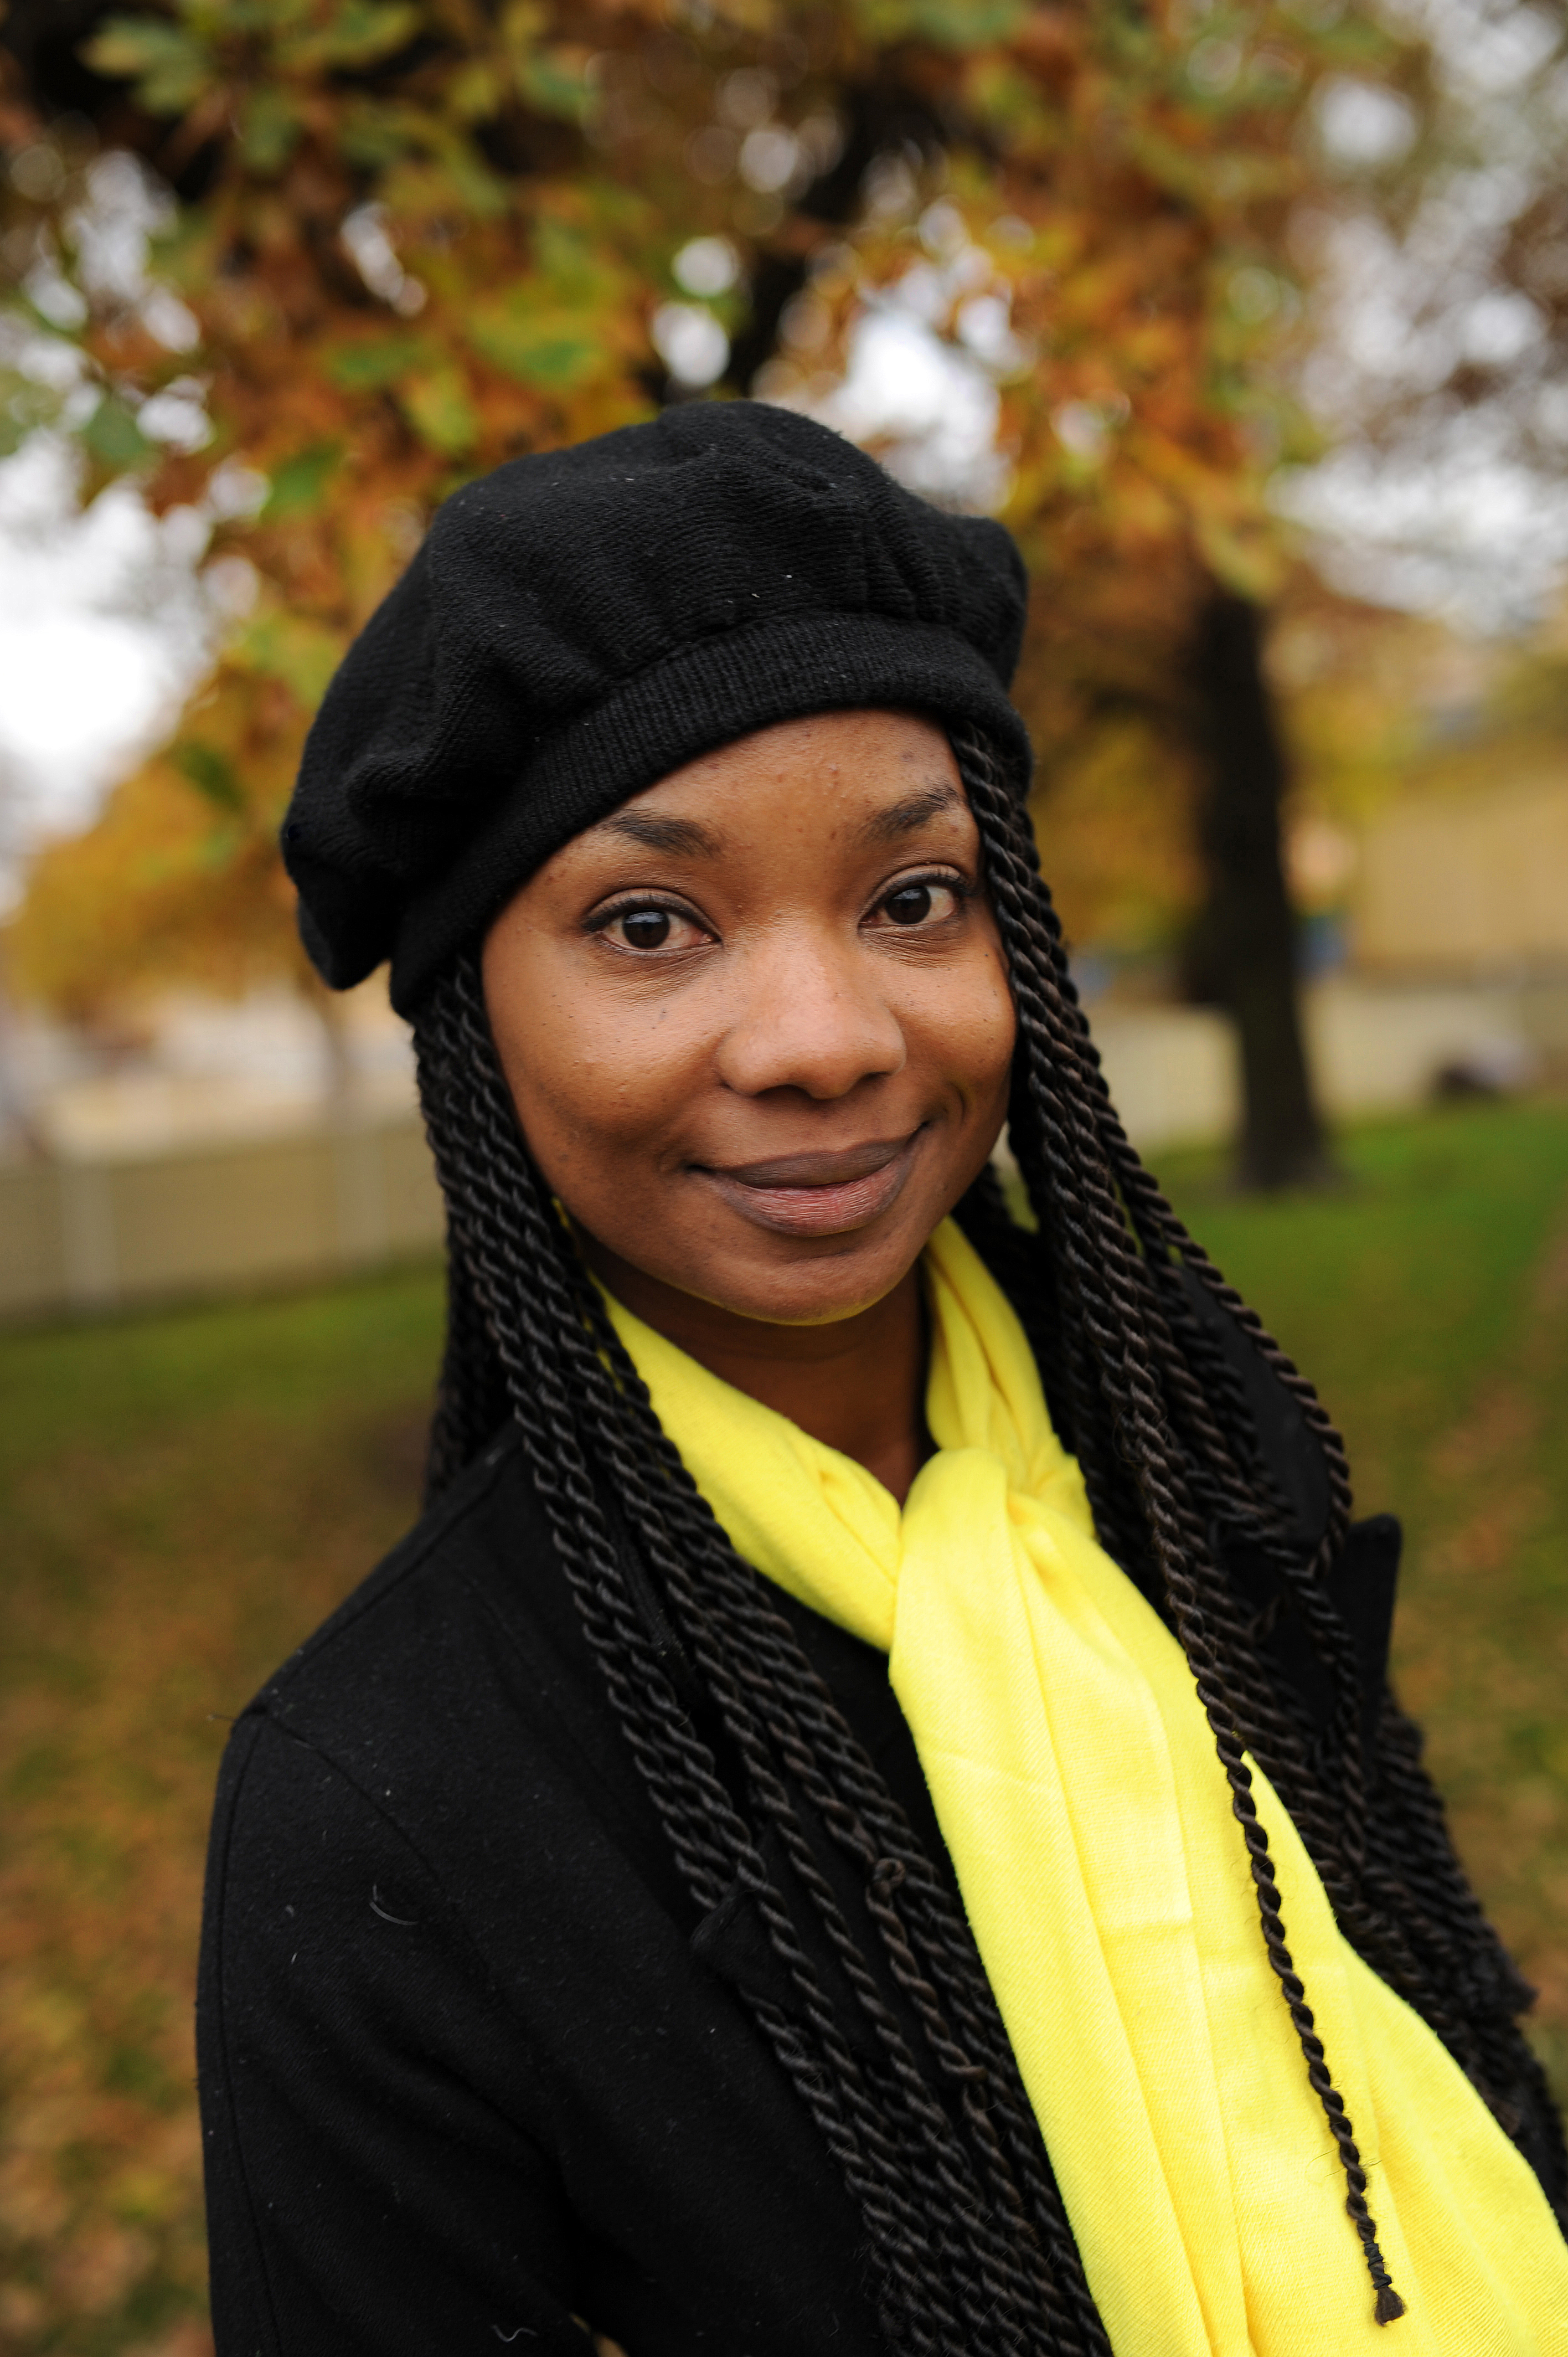 Karent Hinestroza on taistellut afrokolumbialaisten ja naisten oikeuksien puolesta opiskeluajoista lähtien. ”Toimin Chao  Racismo –verkostossa. Taistelemme syrjintää vastaan ja rohkaisemme nuoria afrokolumbialaisia uskomaan itseensä.” Kuva: Joanna Lindén-Montes